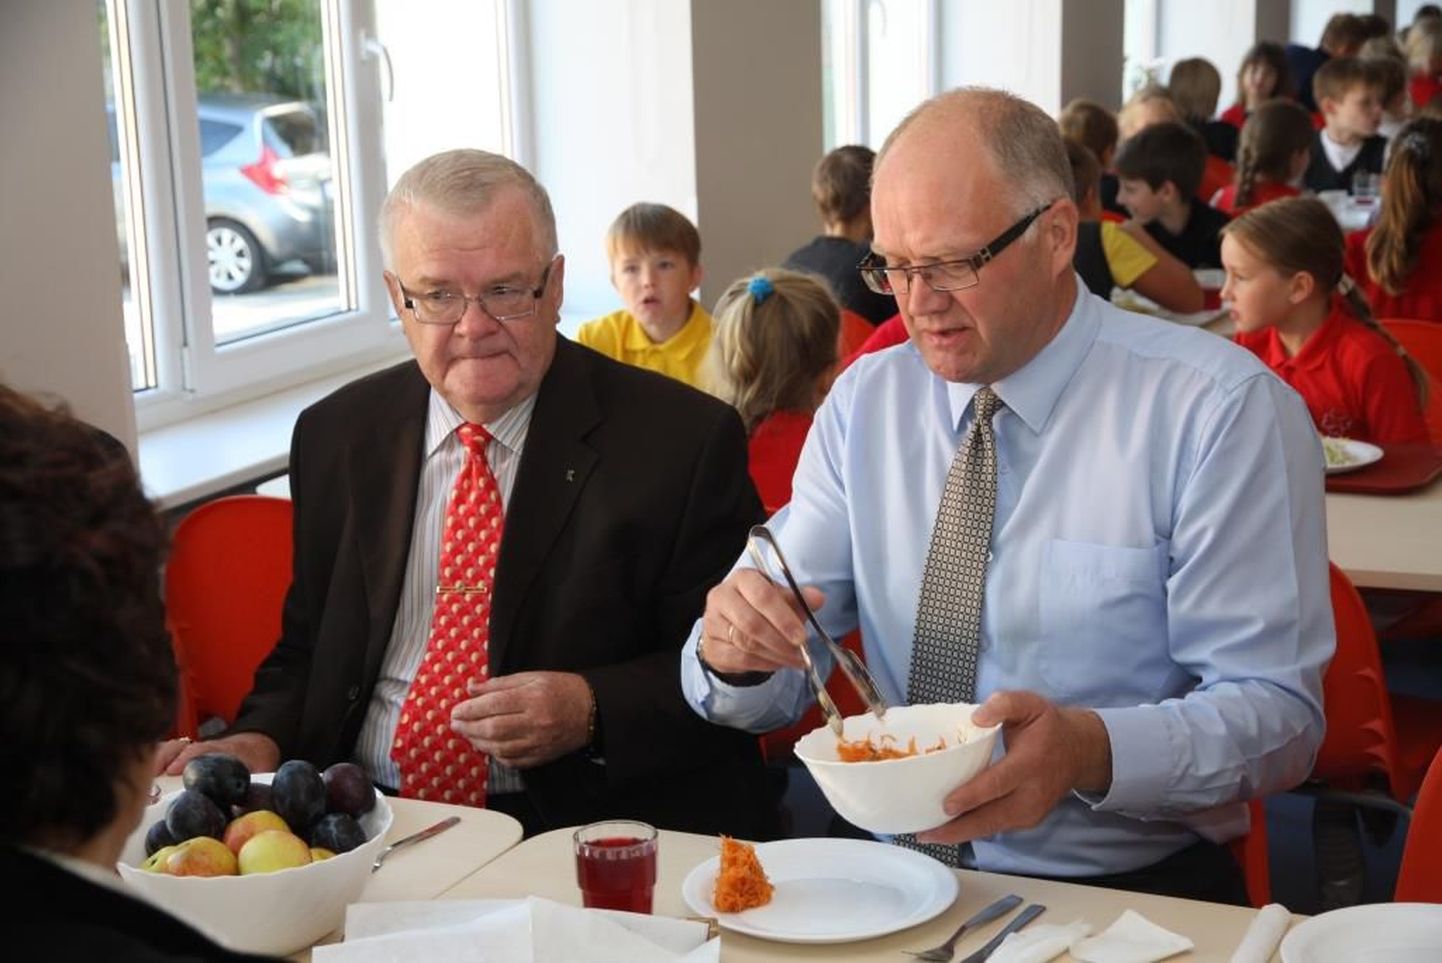 Мэр Таллинна Эдгар Сависаар попробовал обед в школьной столовой.